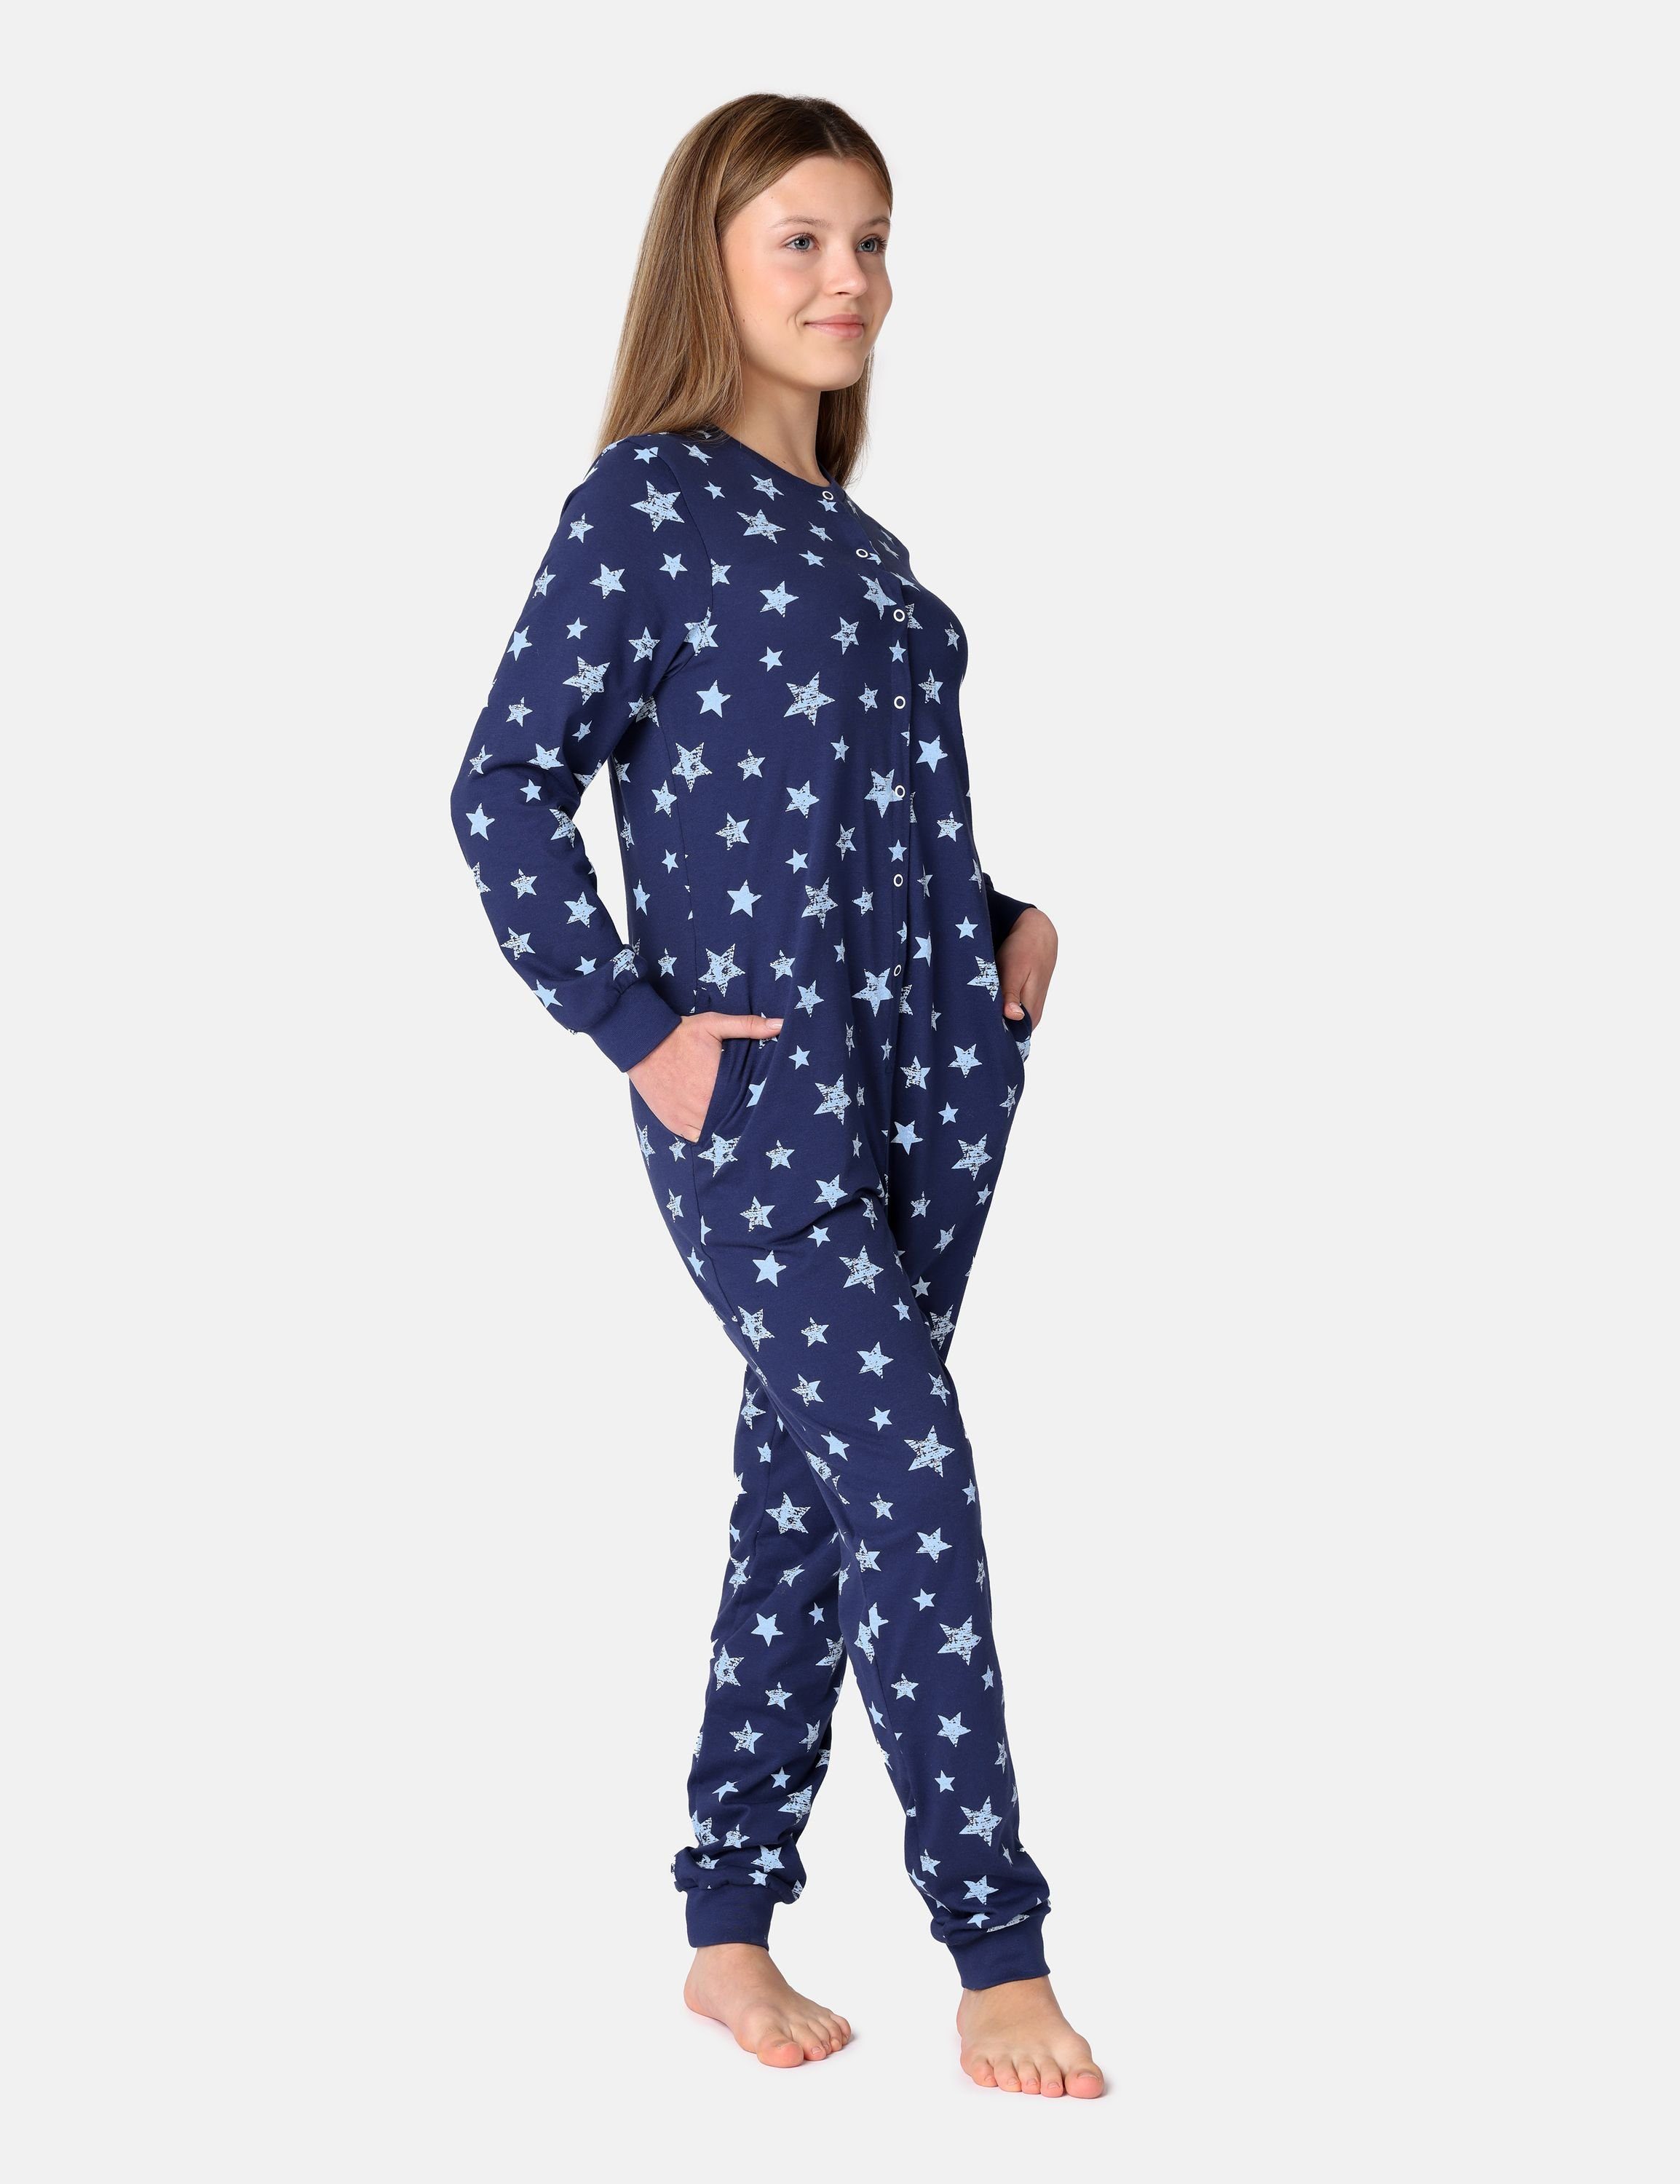 Merry Style Dunkelblau/Blau Jugend MS10-335 Sterne Schlafanzug Schlafoverall Schlafanzug Mädchen